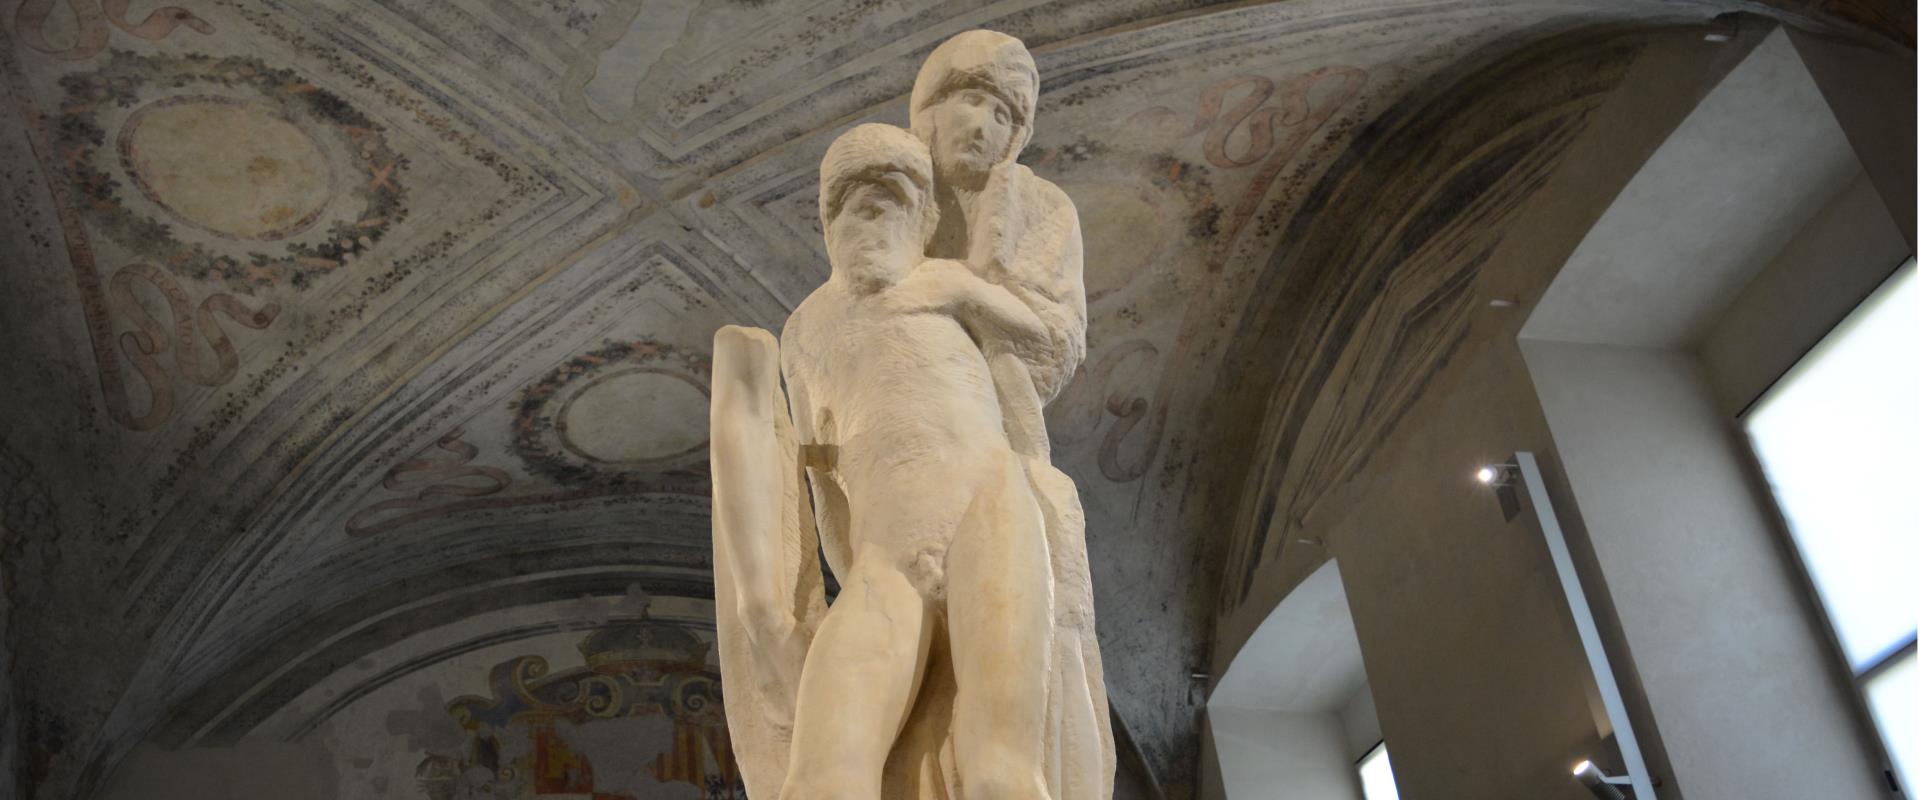 Scopri la Pietà Rondanini, l''ultimo capolavoro incompiuto di Michelangelo al Castello Sforzesco. Visita Milano e soggiorna al Best Western Hotel City vicino alle principali attrazioni turistiche della città.